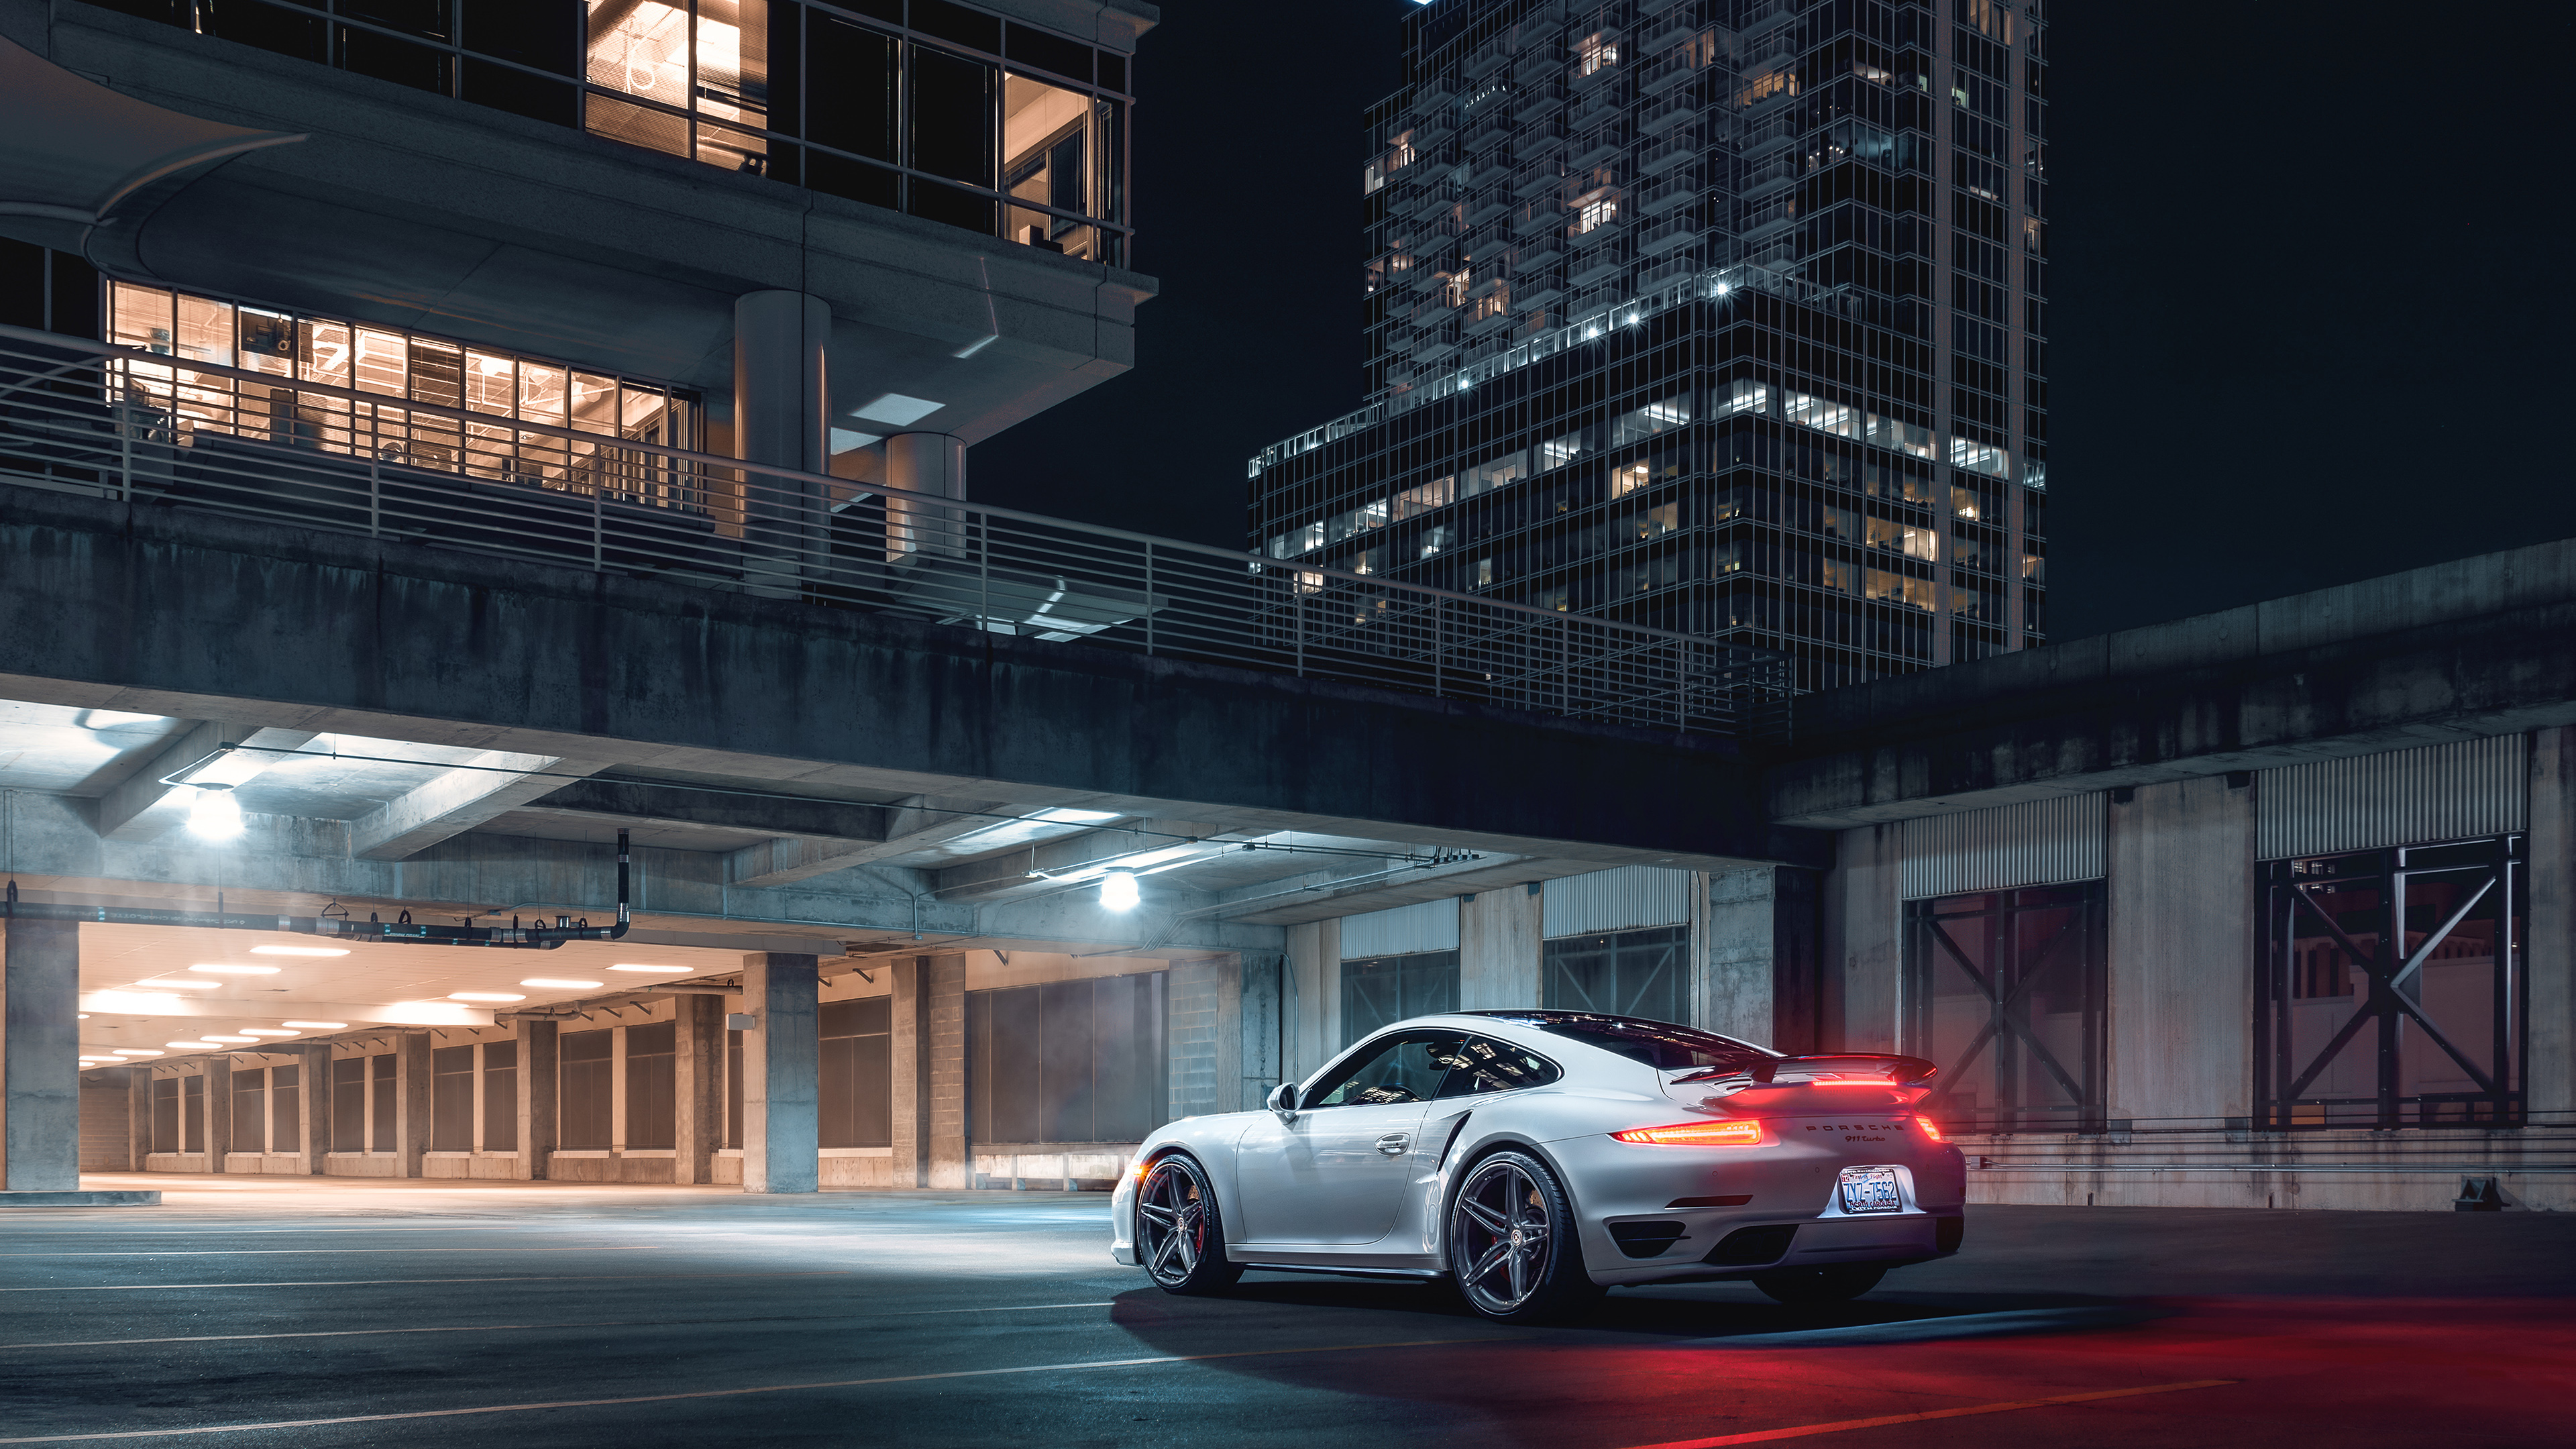 Porsche 911 White 2019 - White Porsche Wallpaper 4k - HD Wallpaper 